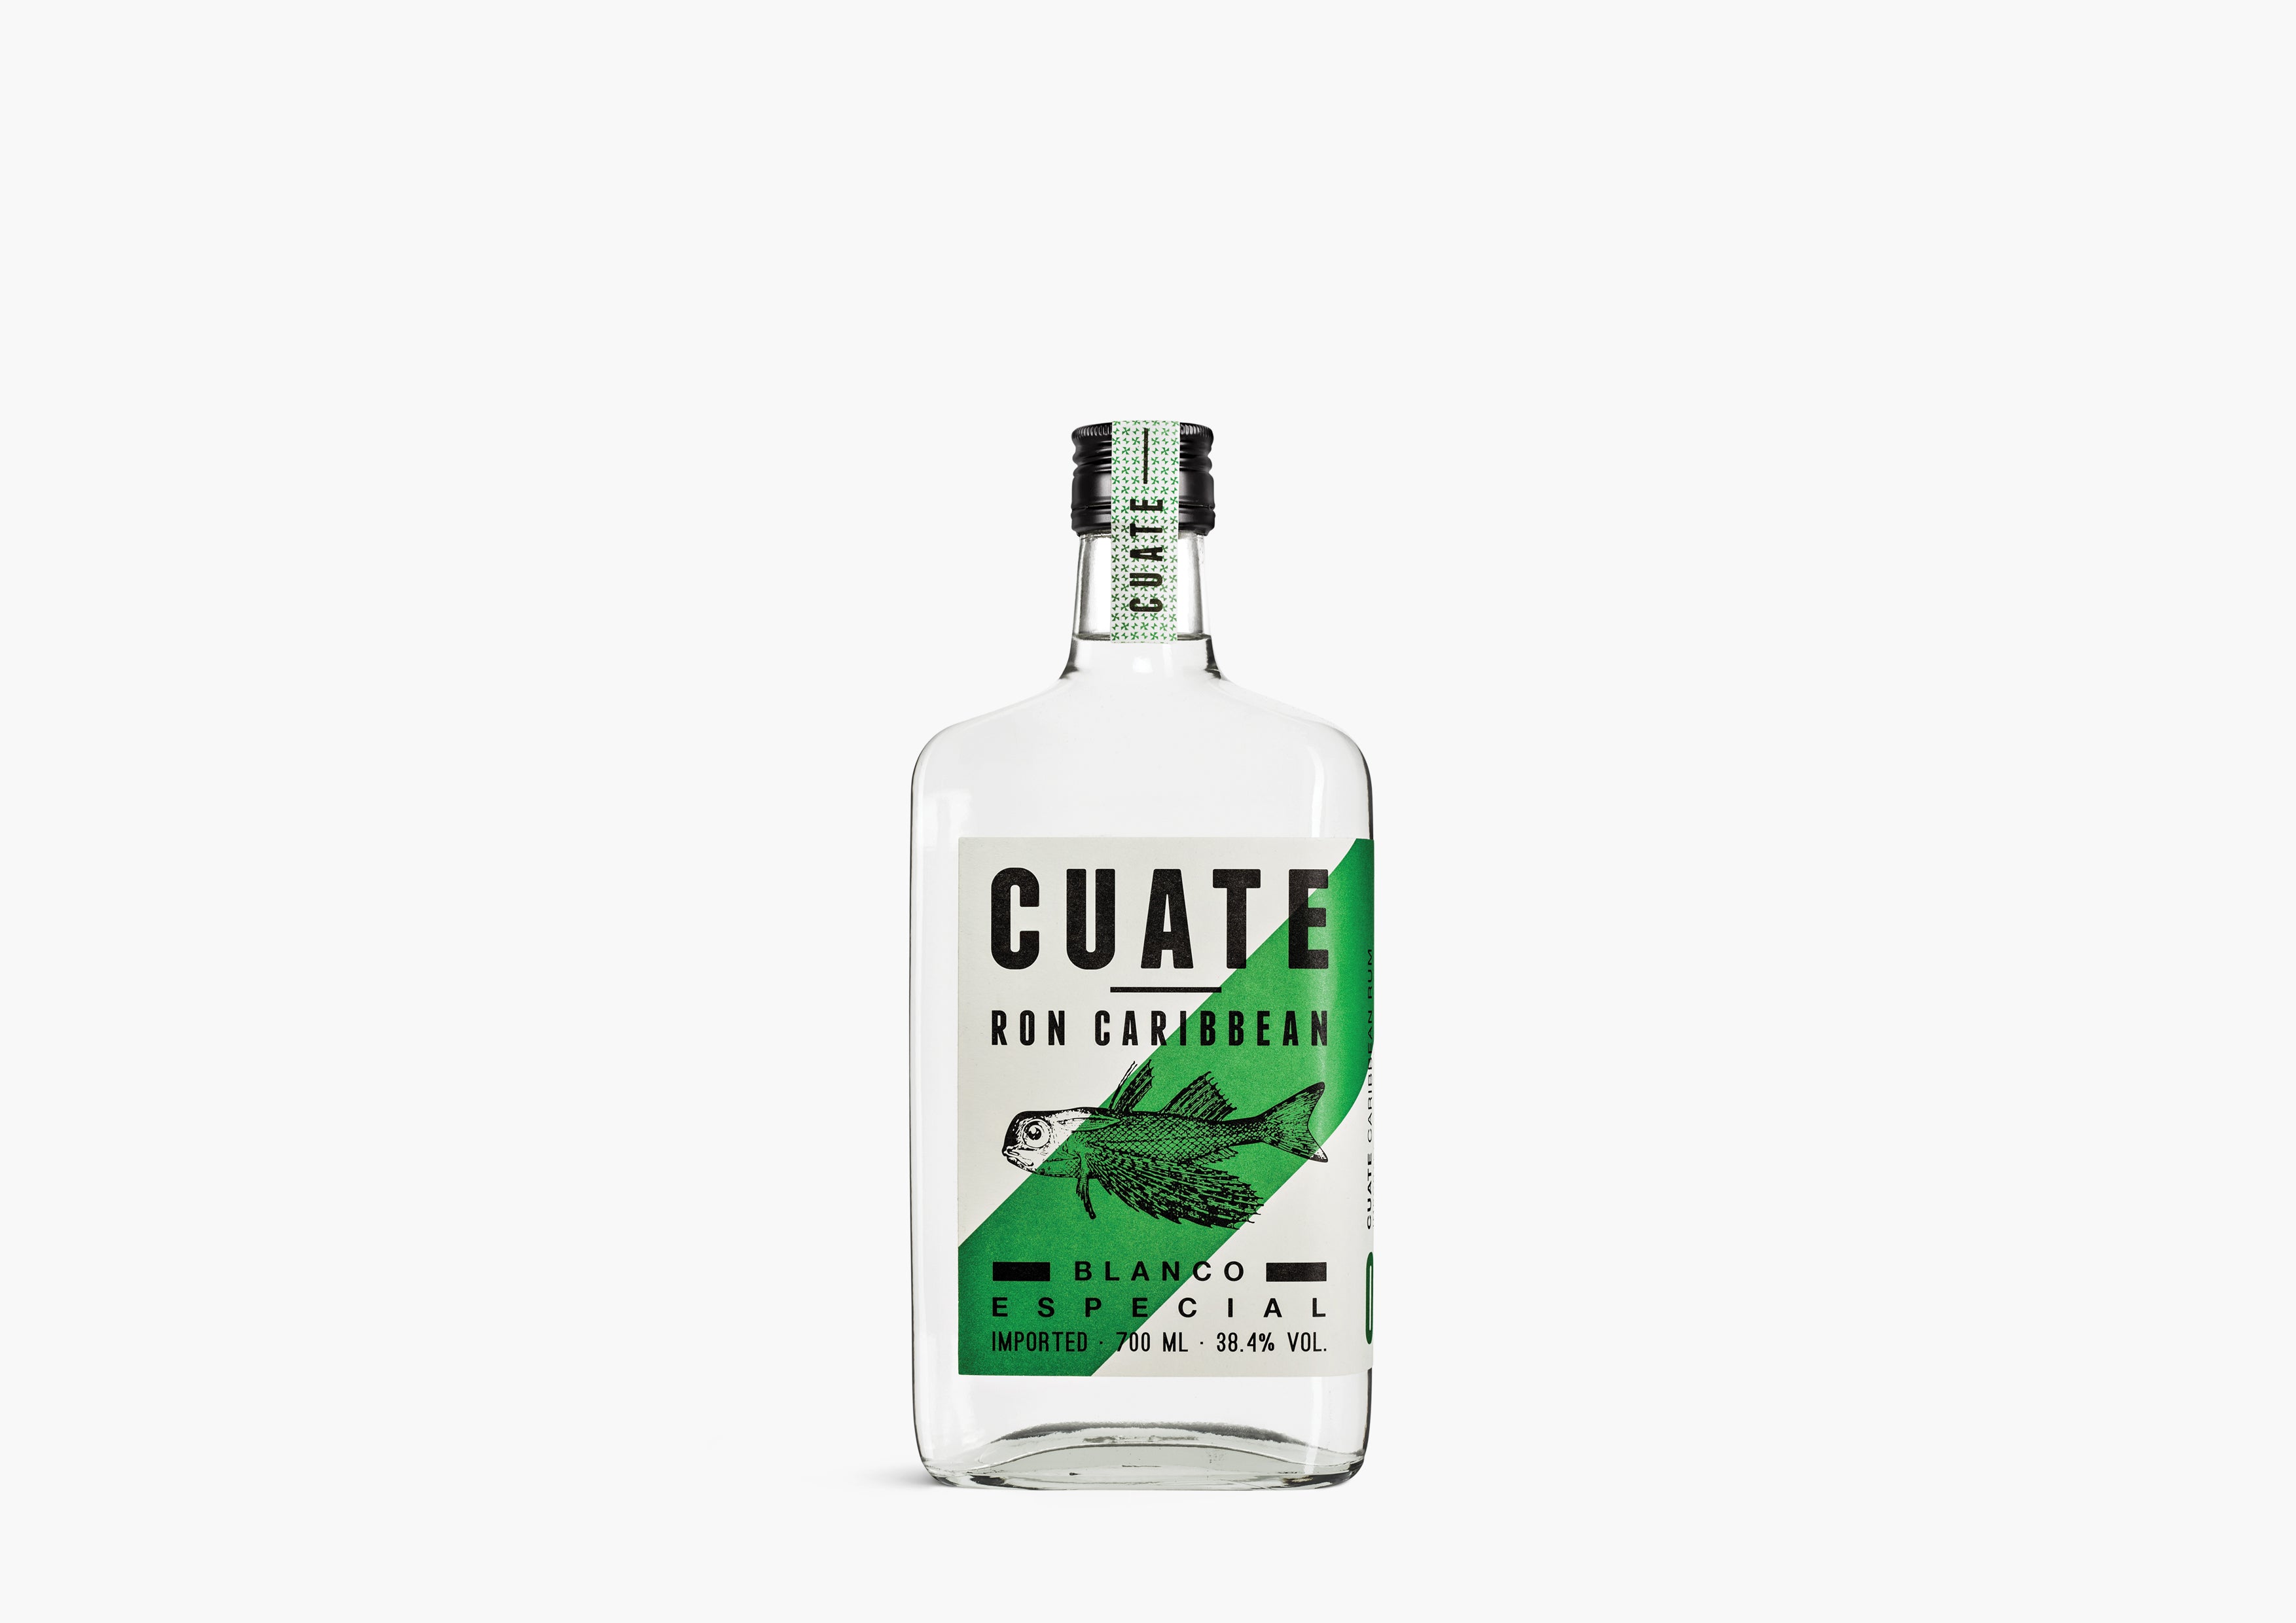 Cuate Rum 01 - Blanco Especial 700ml